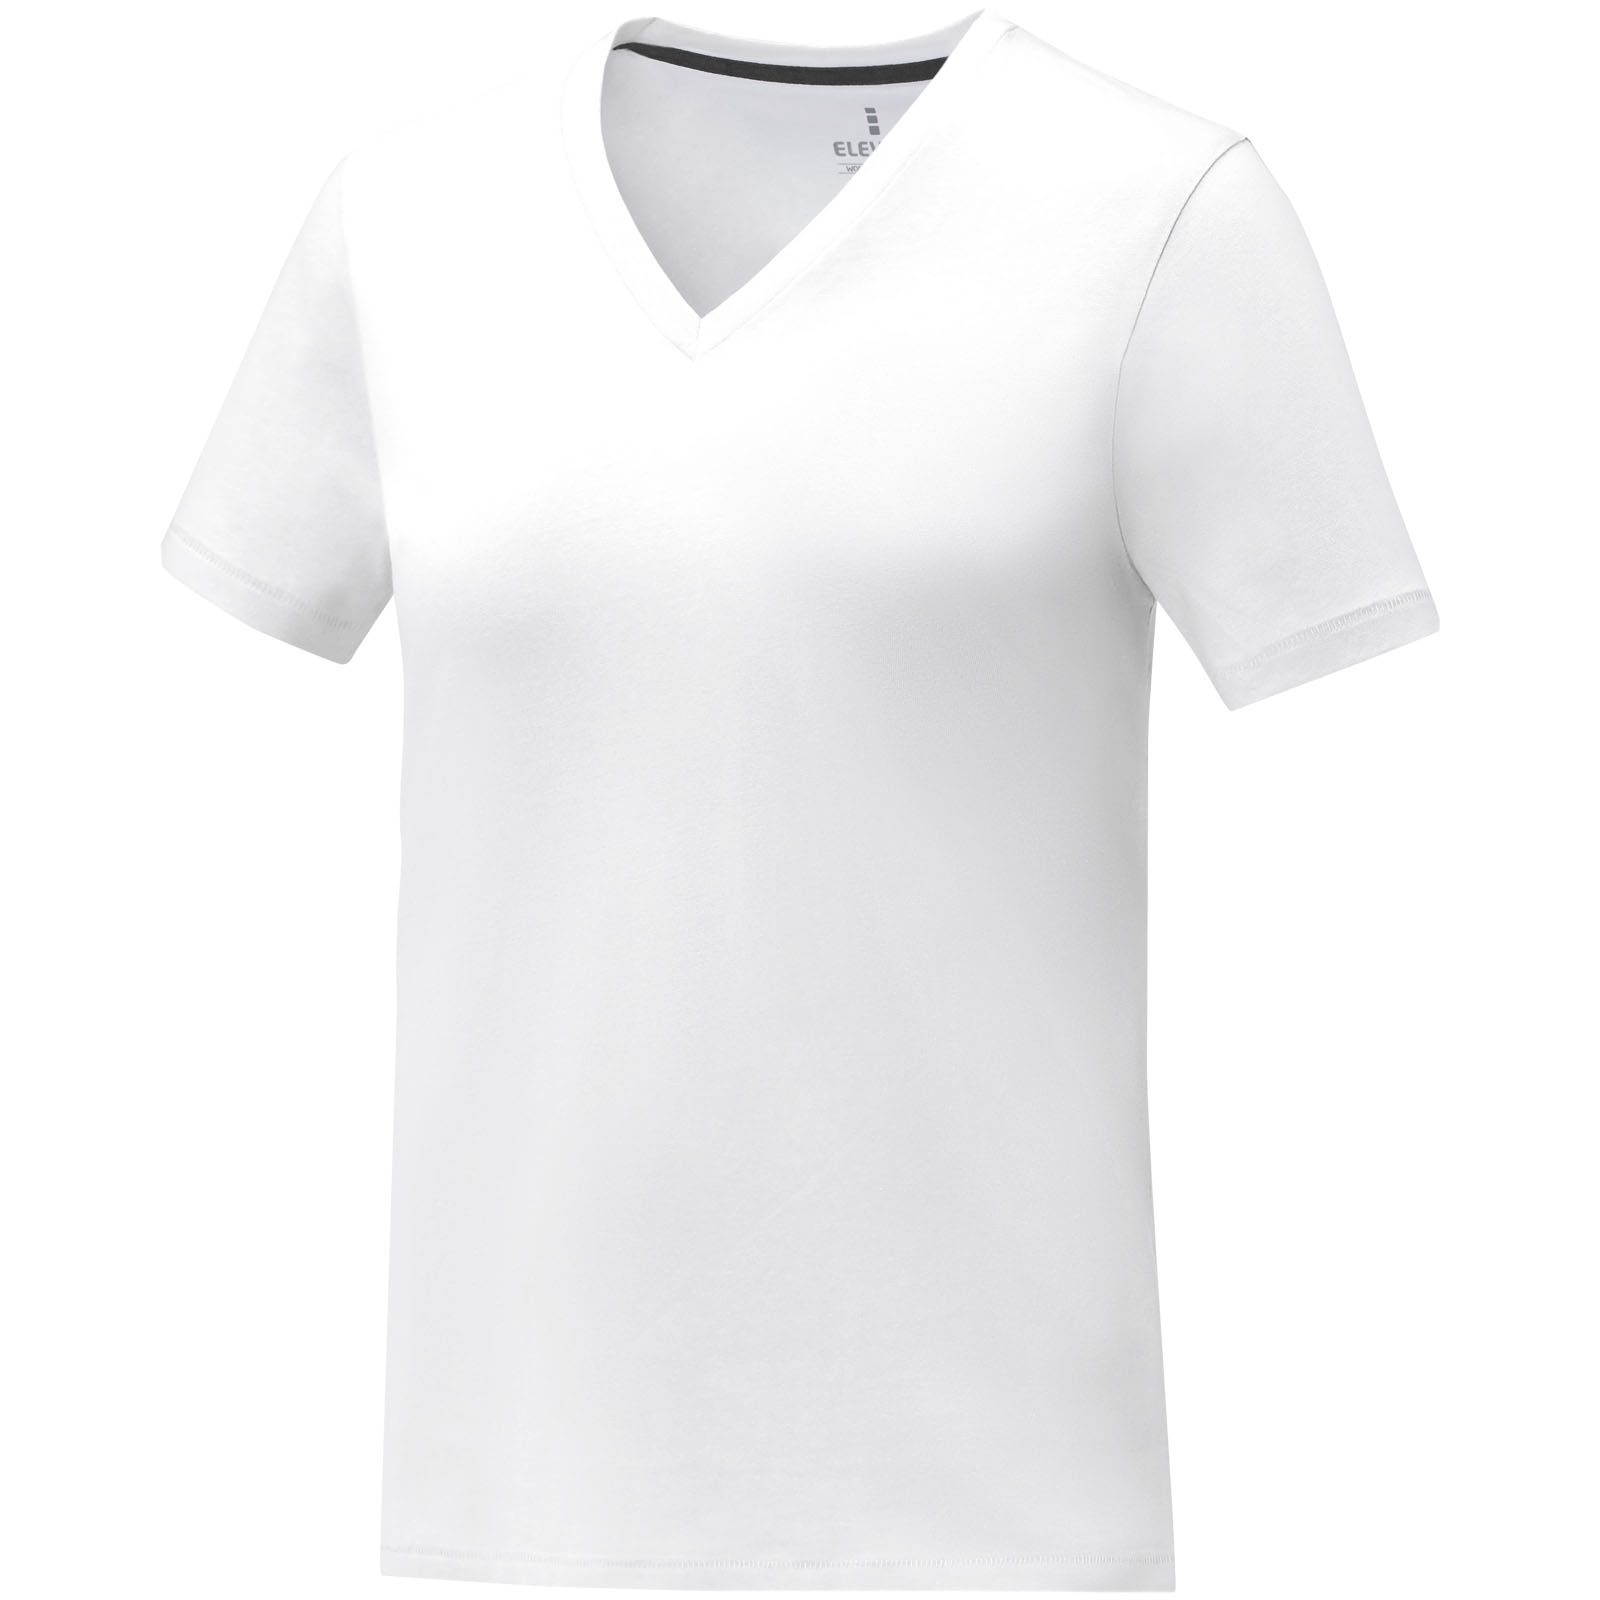 Improve Somoto V-neck T-shirt - Aylesbury - Shipley